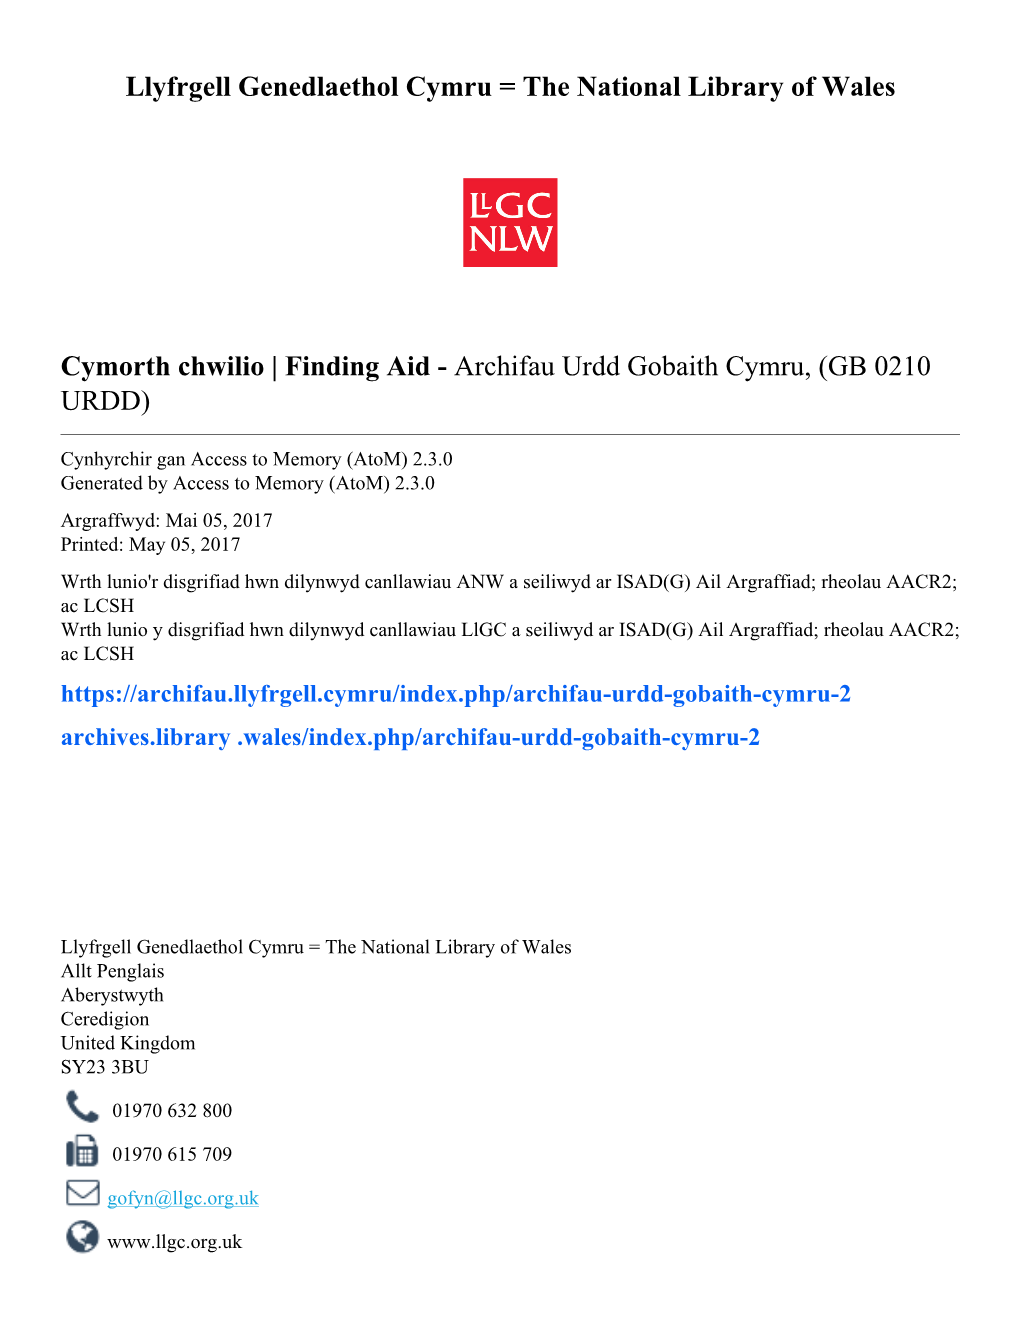 Finding Aid - Archifau Urdd Gobaith Cymru, (GB 0210 URDD)